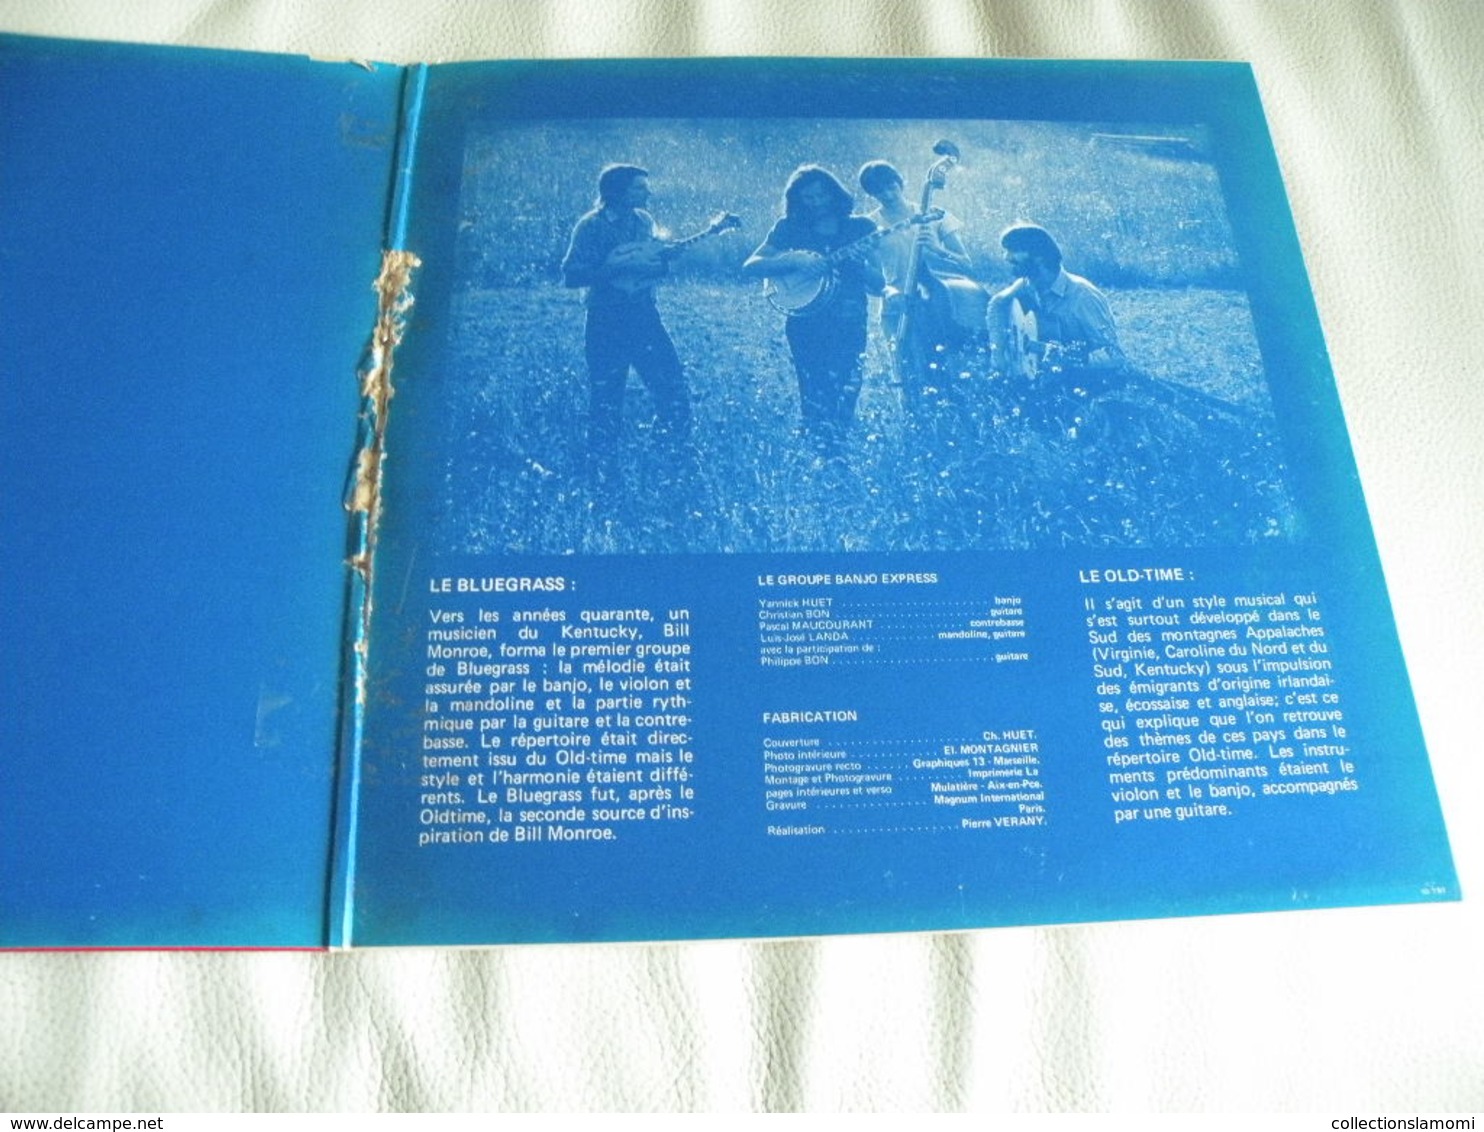 Country Music - Banjo Express (Titres sur photos) - Vinyle 33 T LP